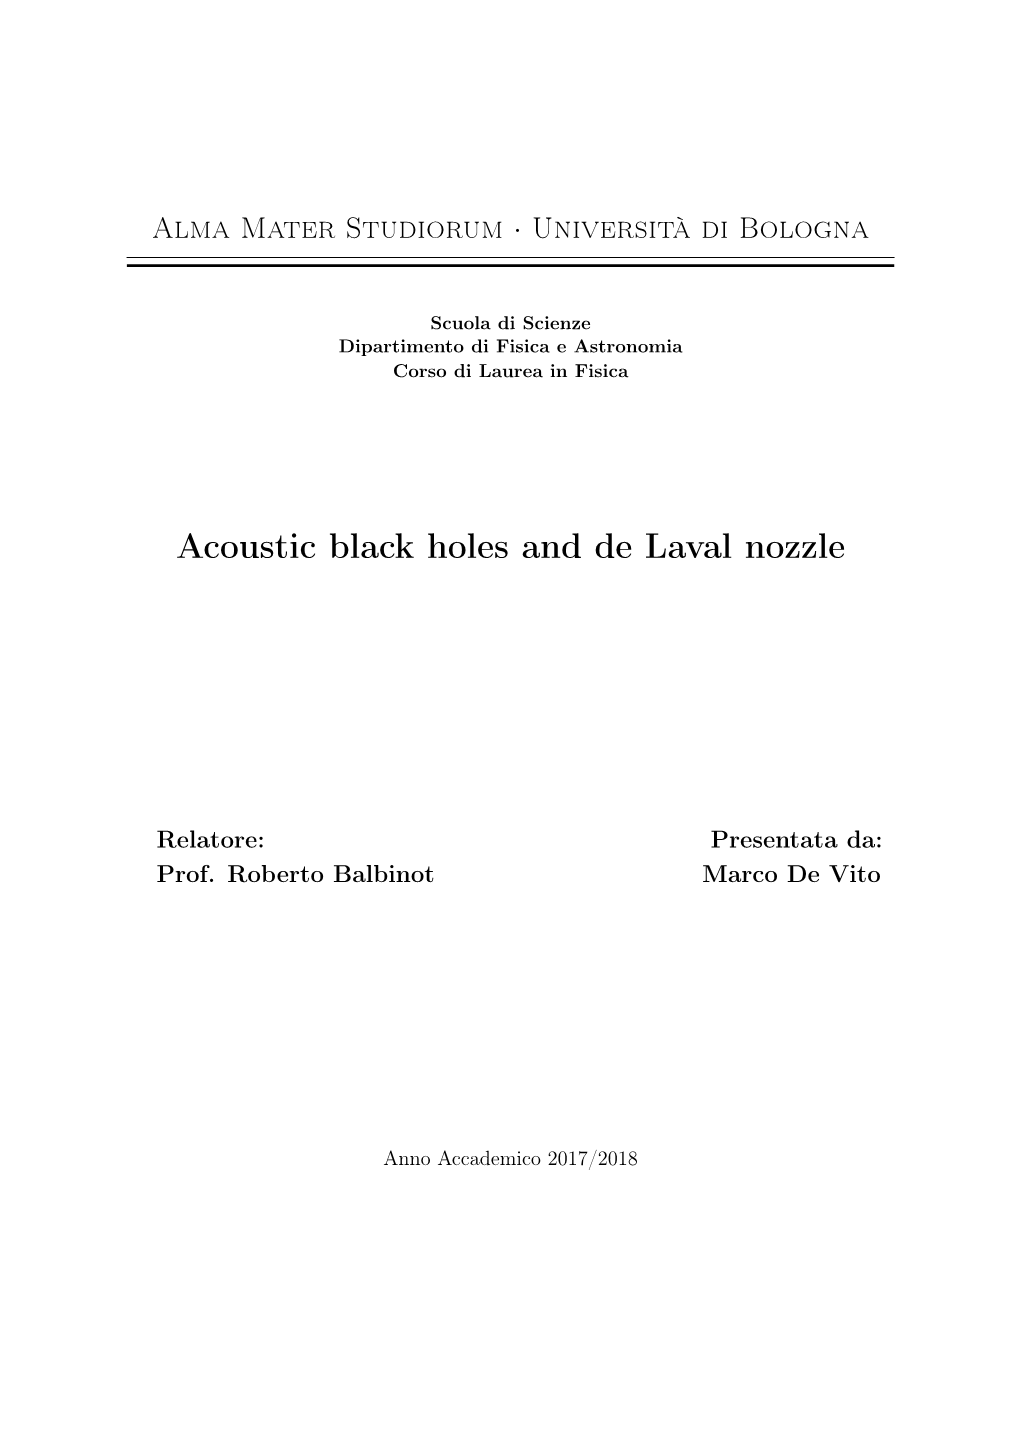 Acoustic Black Holes and De Laval Nozzle